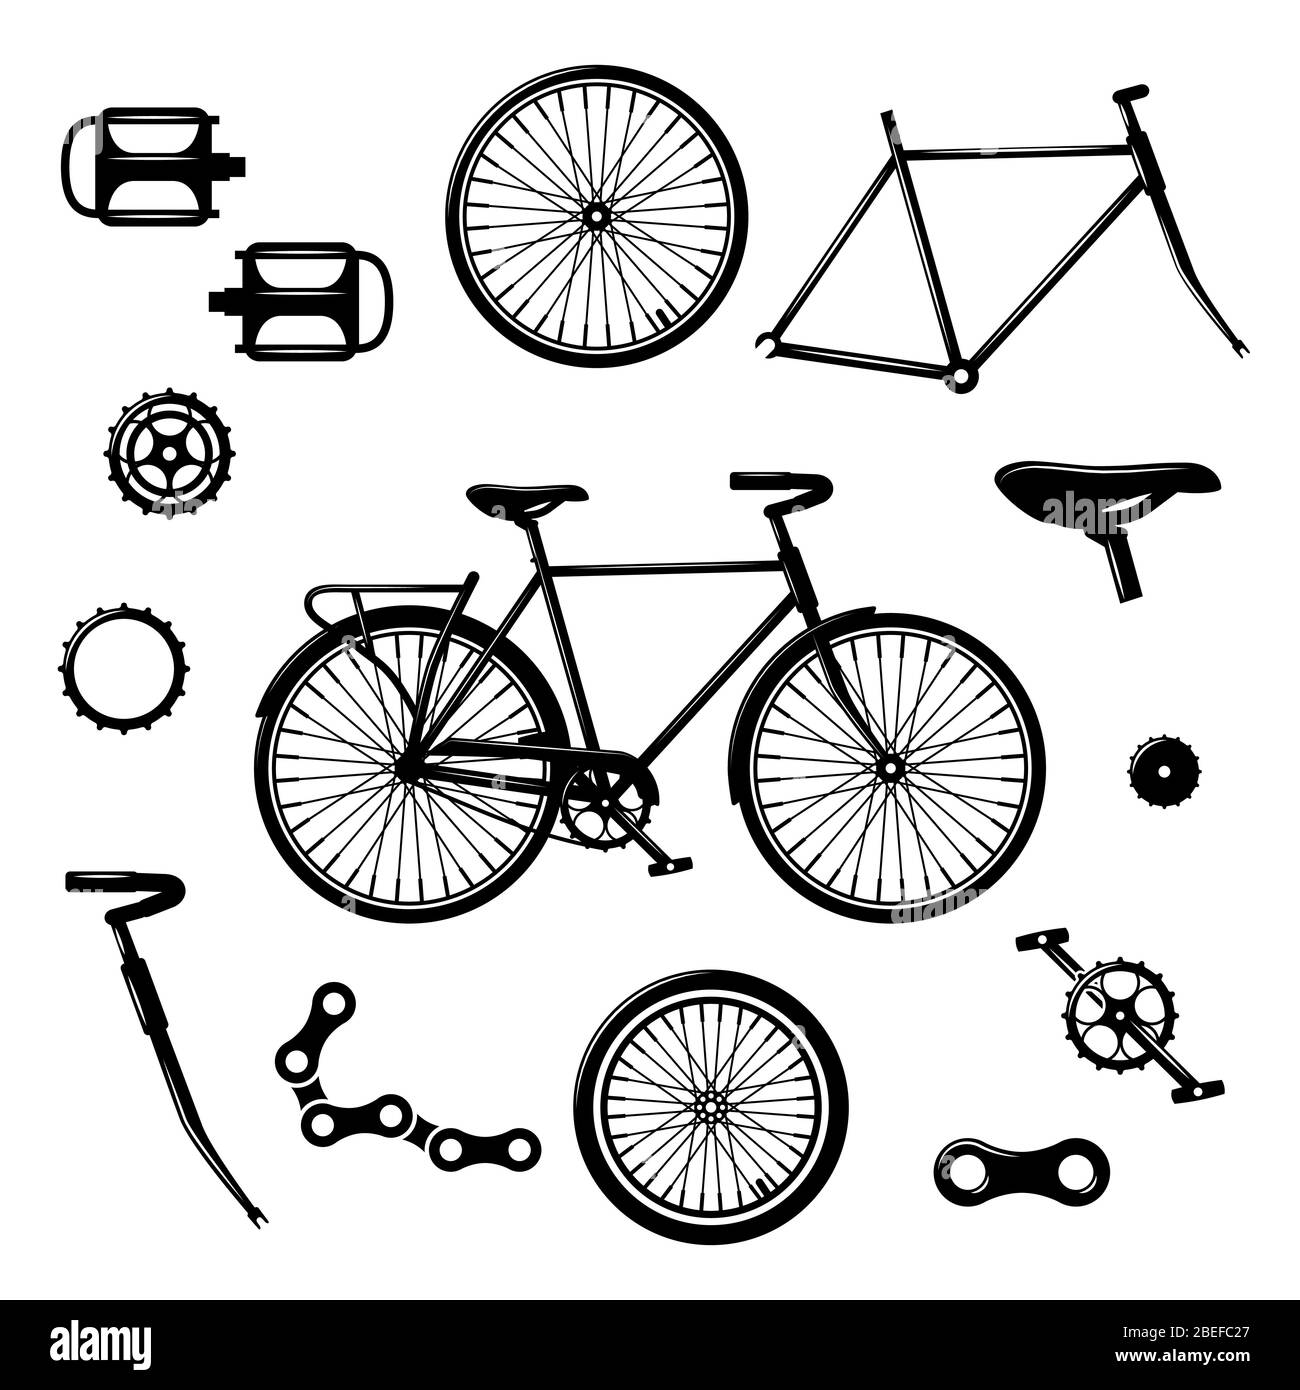 Parti per biciclette. Set di vettori isolati per apparecchiature e componenti per biciclette. Illustrazione della catena e del pedale della bicicletta Illustrazione Vettoriale